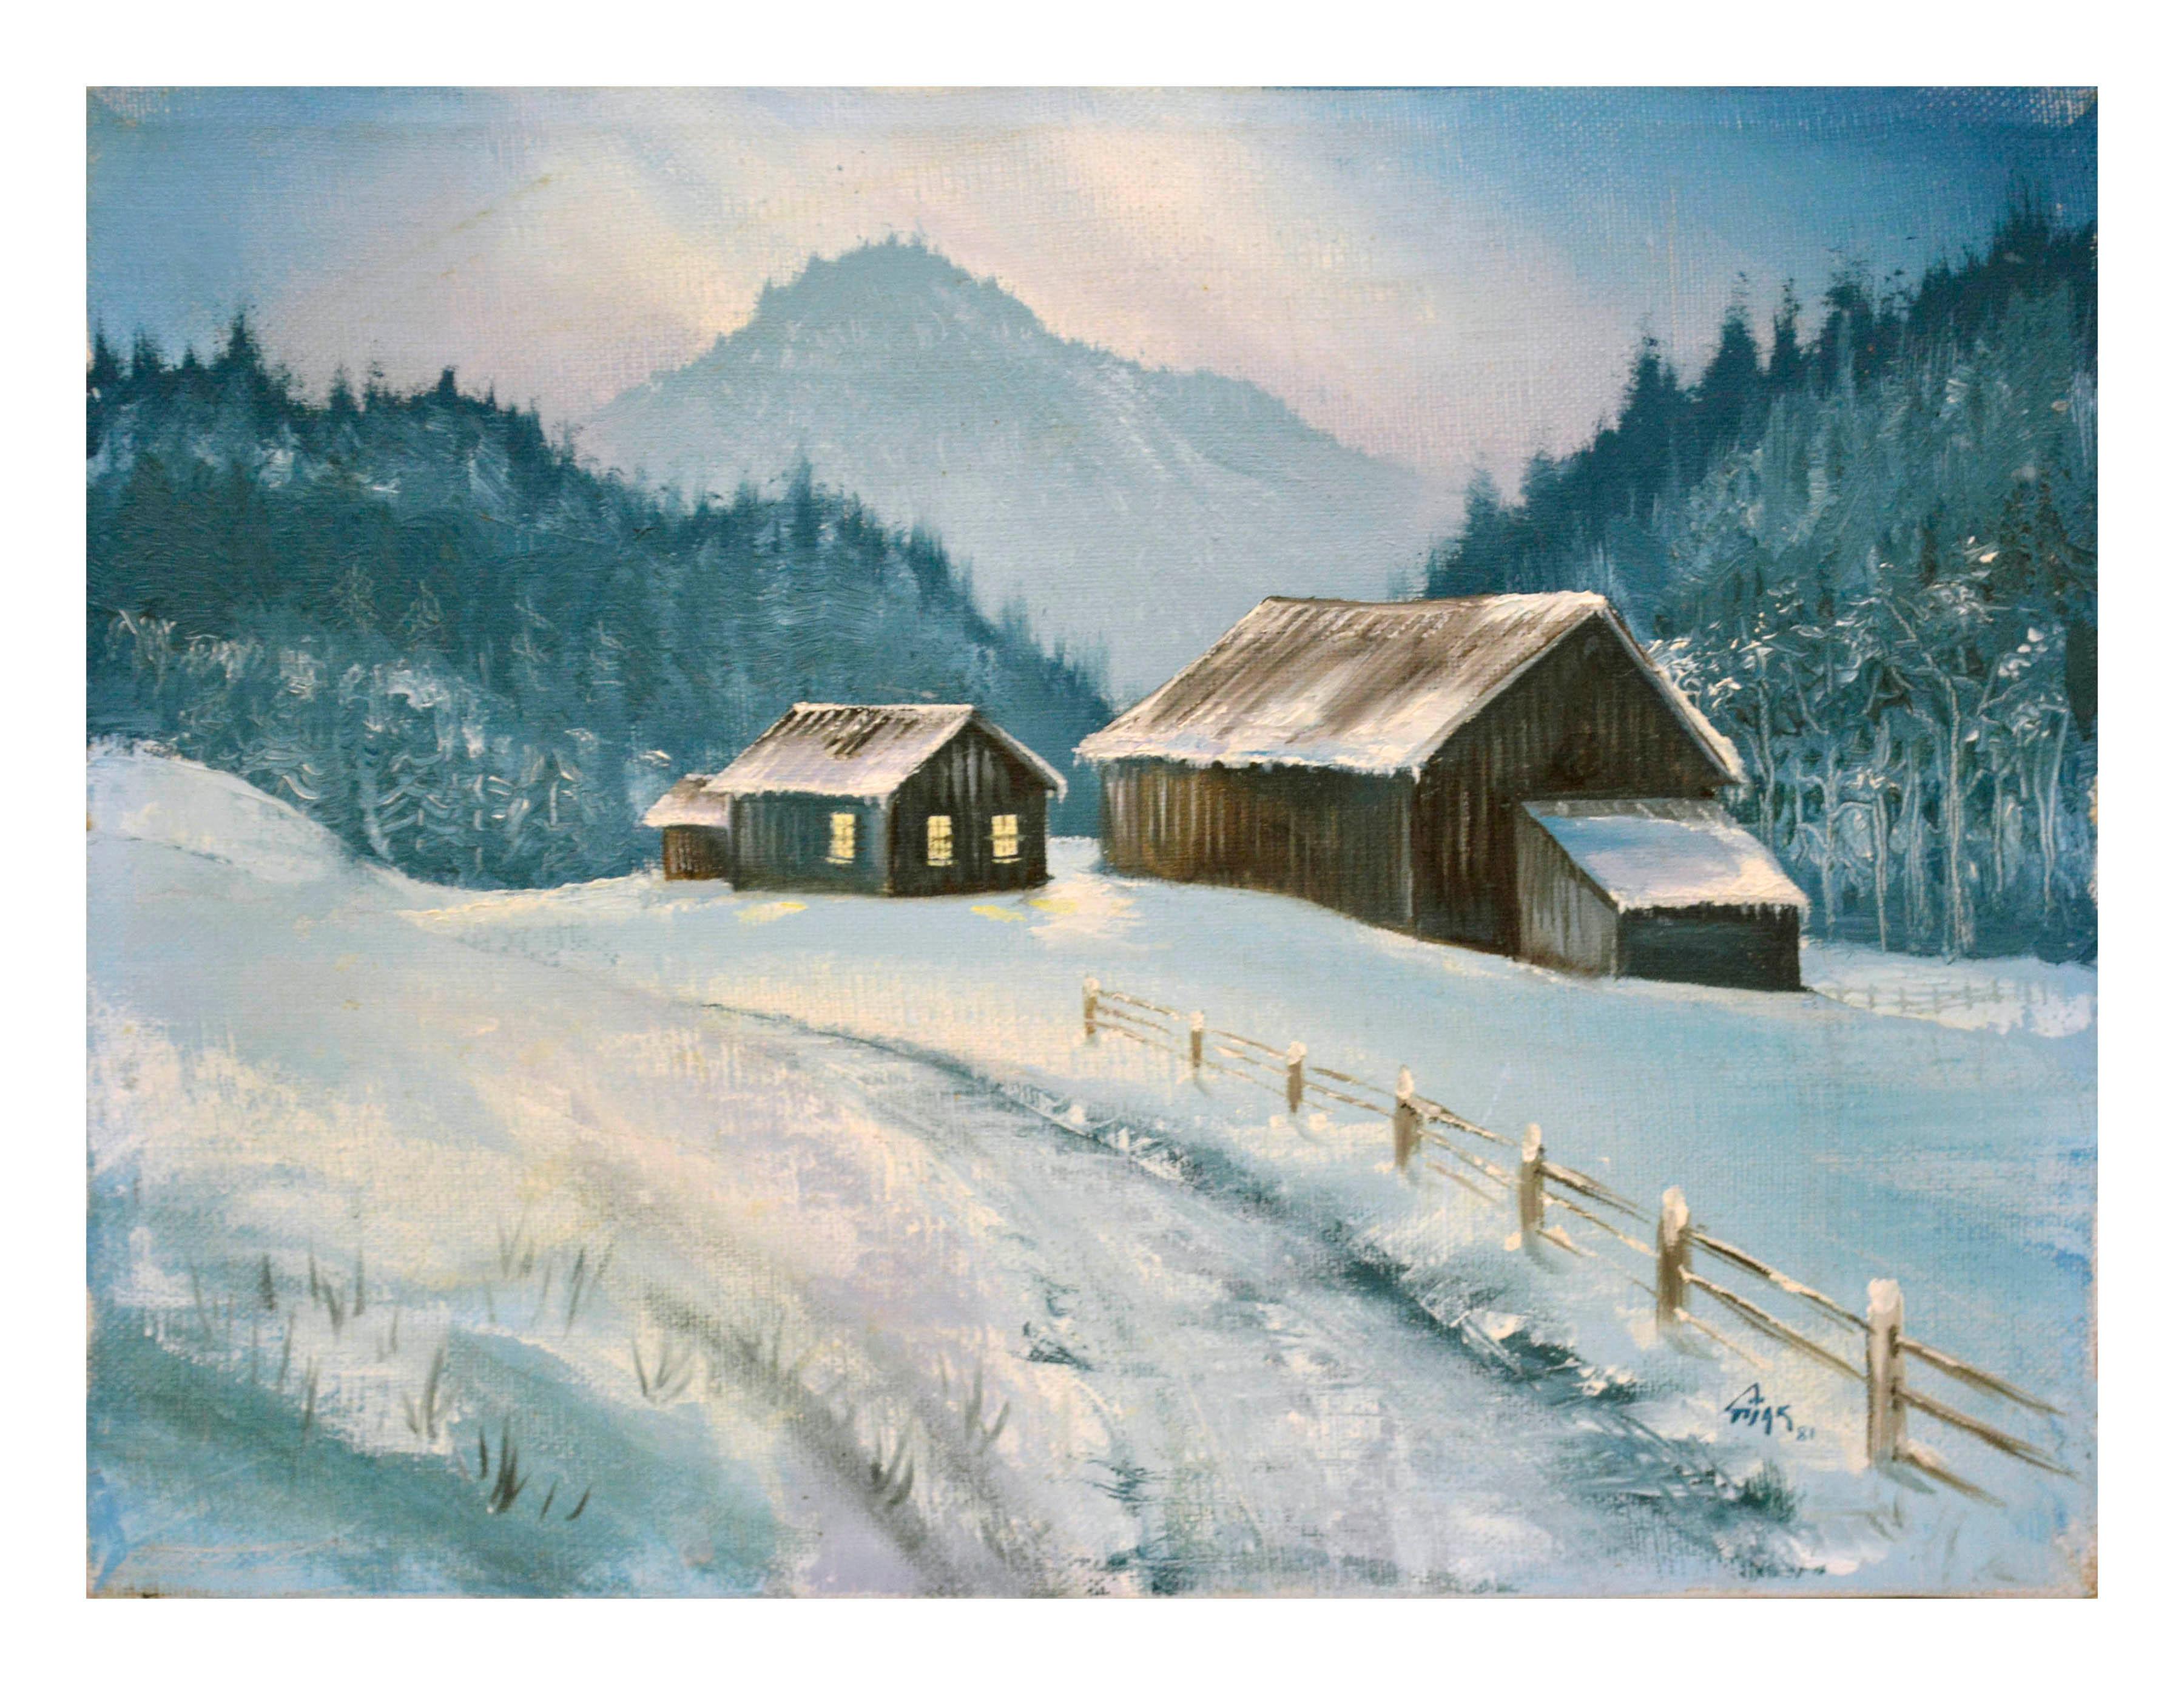 Snowy Farm - Winter Cabin Landscape 